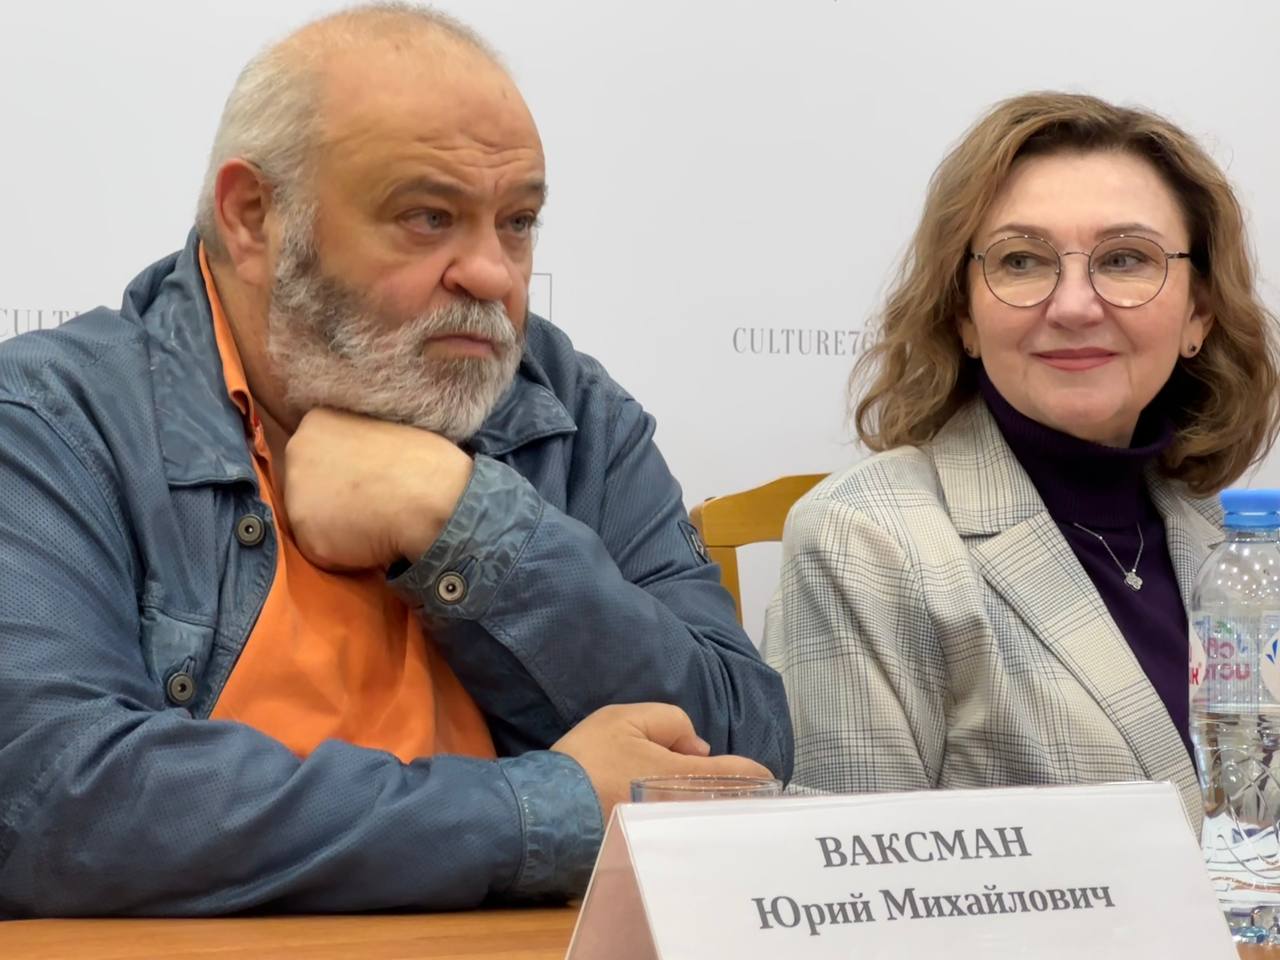 ​Ярославский камерный театр открывает юбилейный сезон